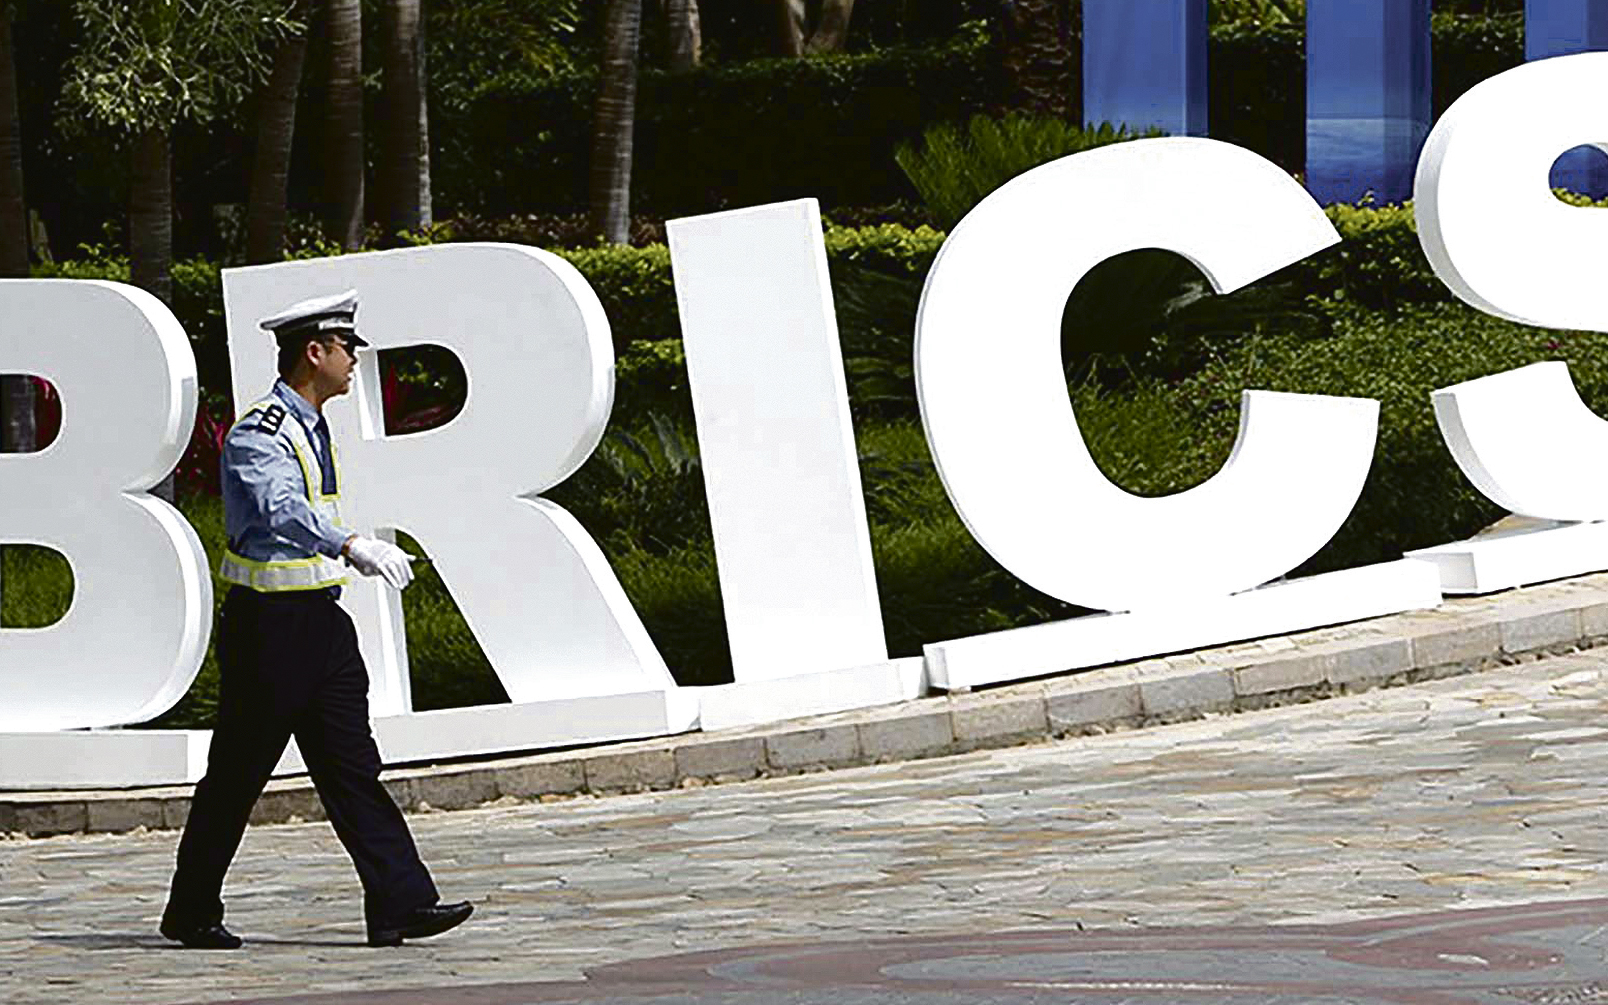 Cimeira dos BRICS: Putin perde capacidade de influência internacional